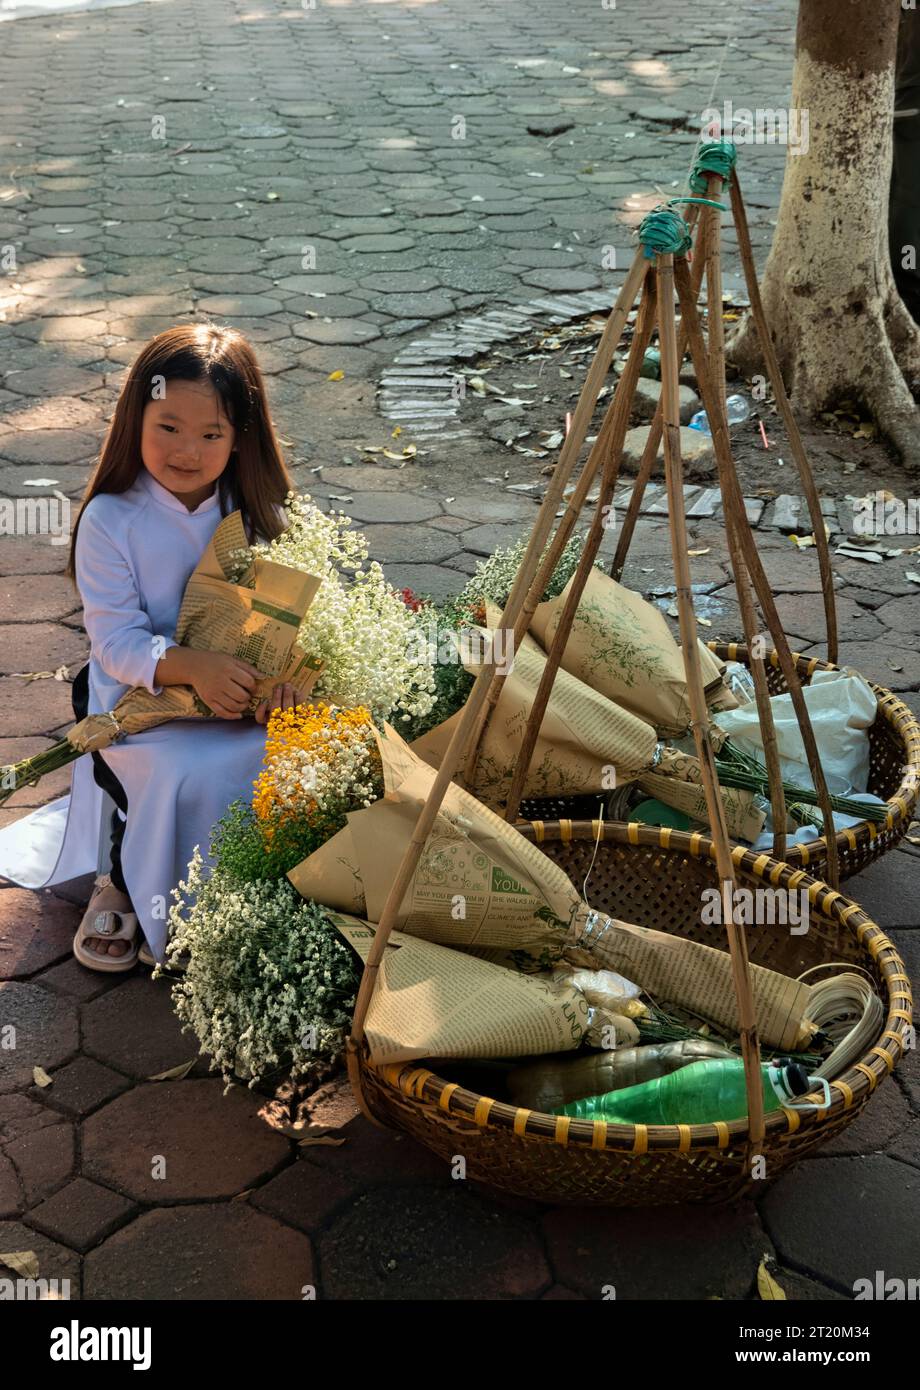 Petite fille avec des fleurs sur Phan Dinh Phung Street, Hanoi, Vietnam Banque D'Images